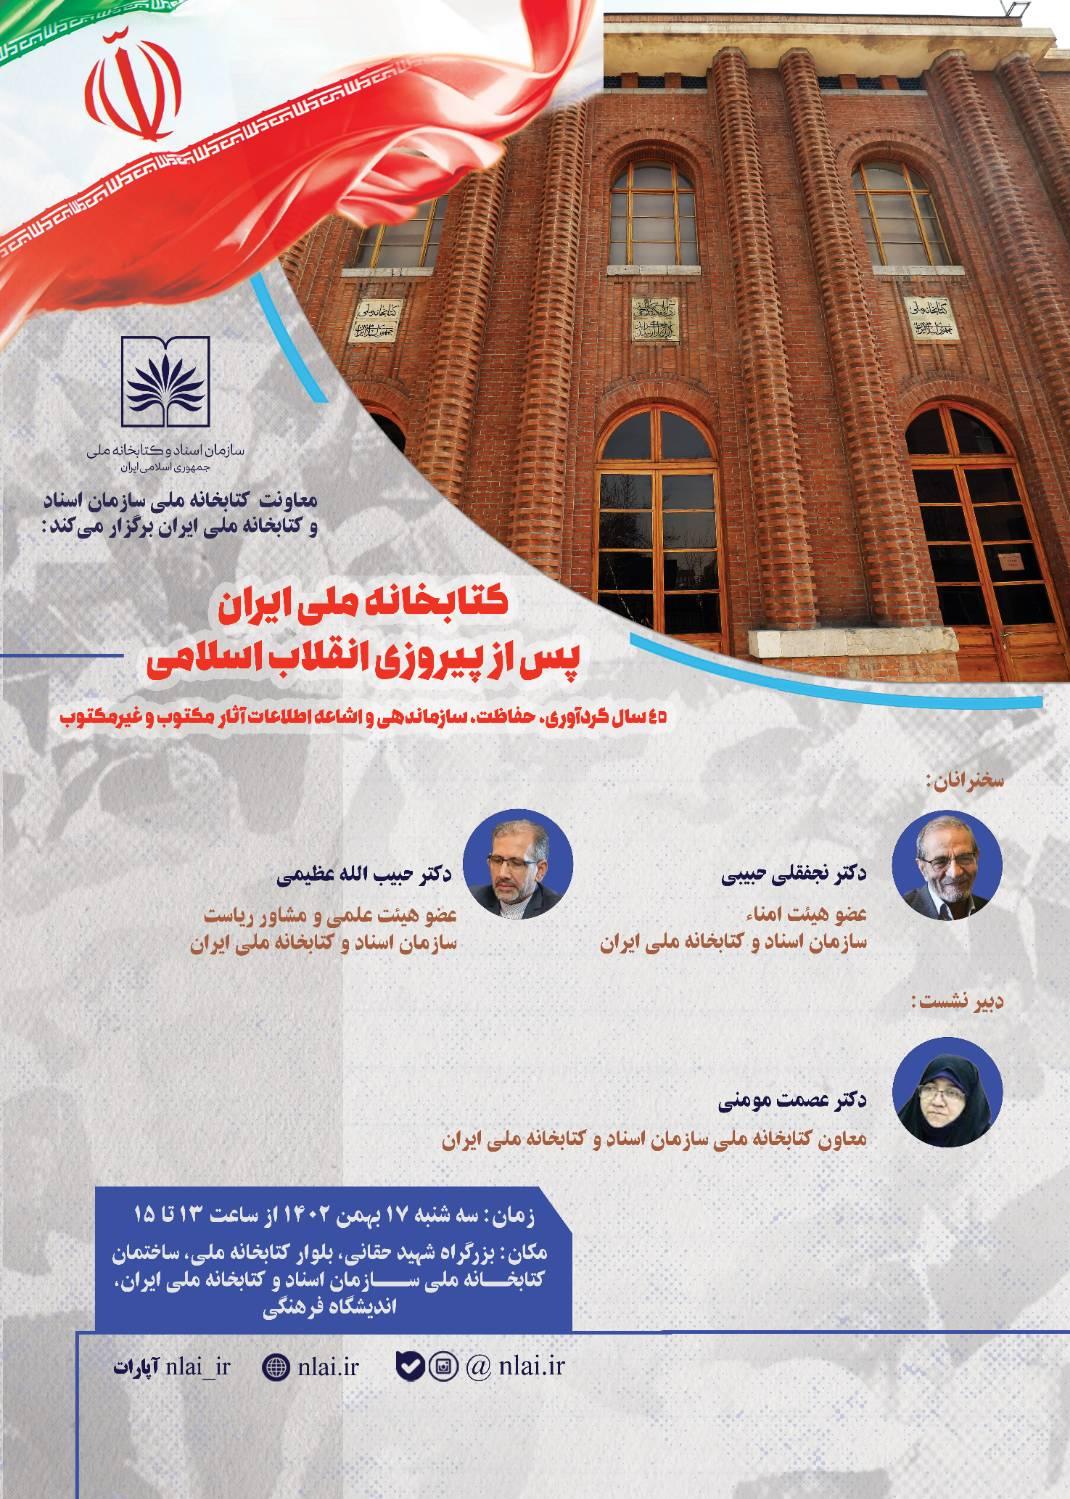 نشست تخصصی «کتابخانه ملی ایران پس از پیروزی انقلاب اسلامی» برگزار می شود